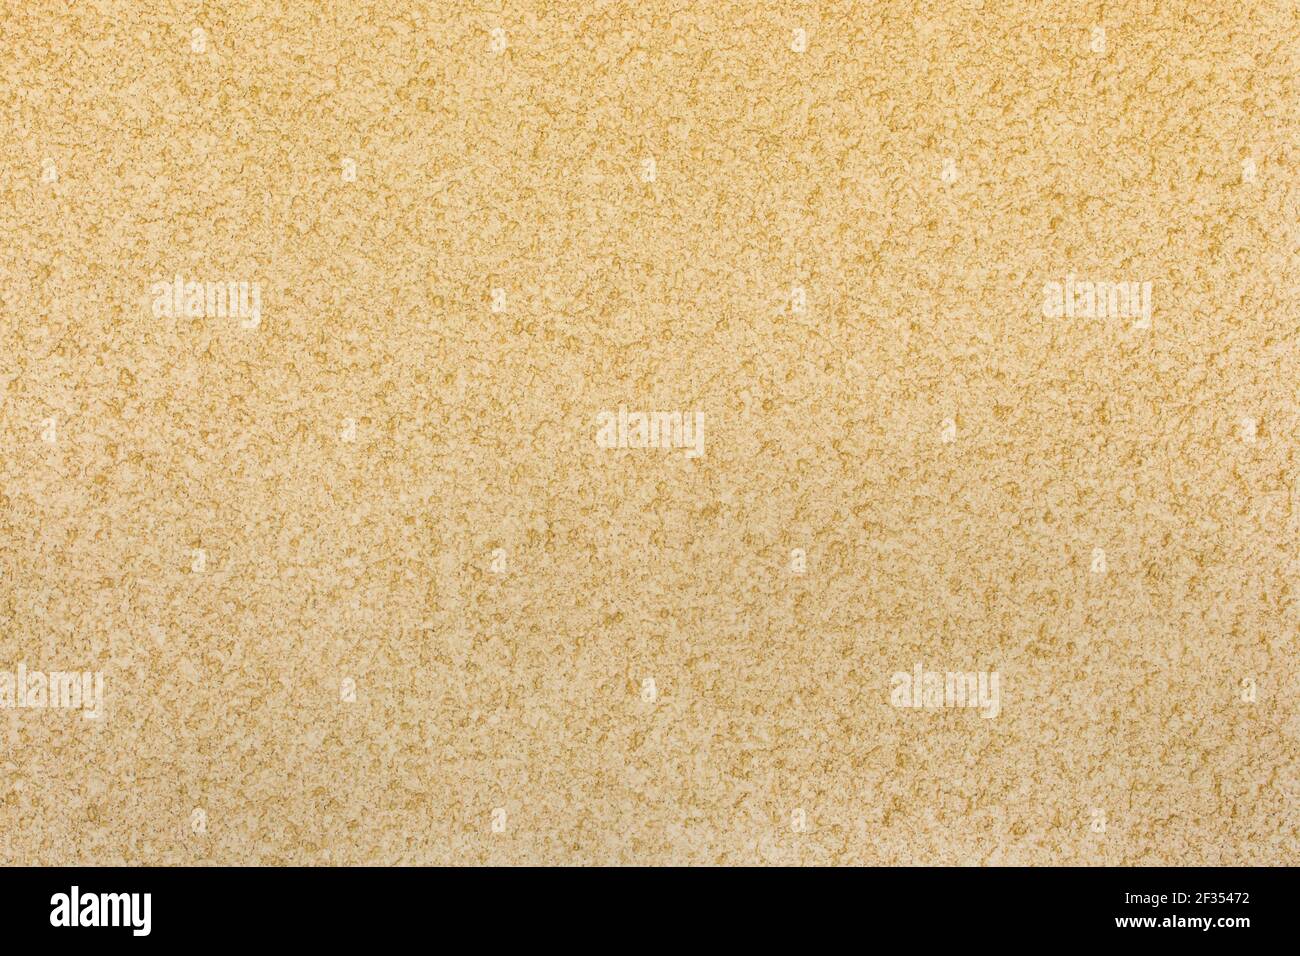 Intonaco di sabbia immagini e fotografie stock ad alta risoluzione - Alamy